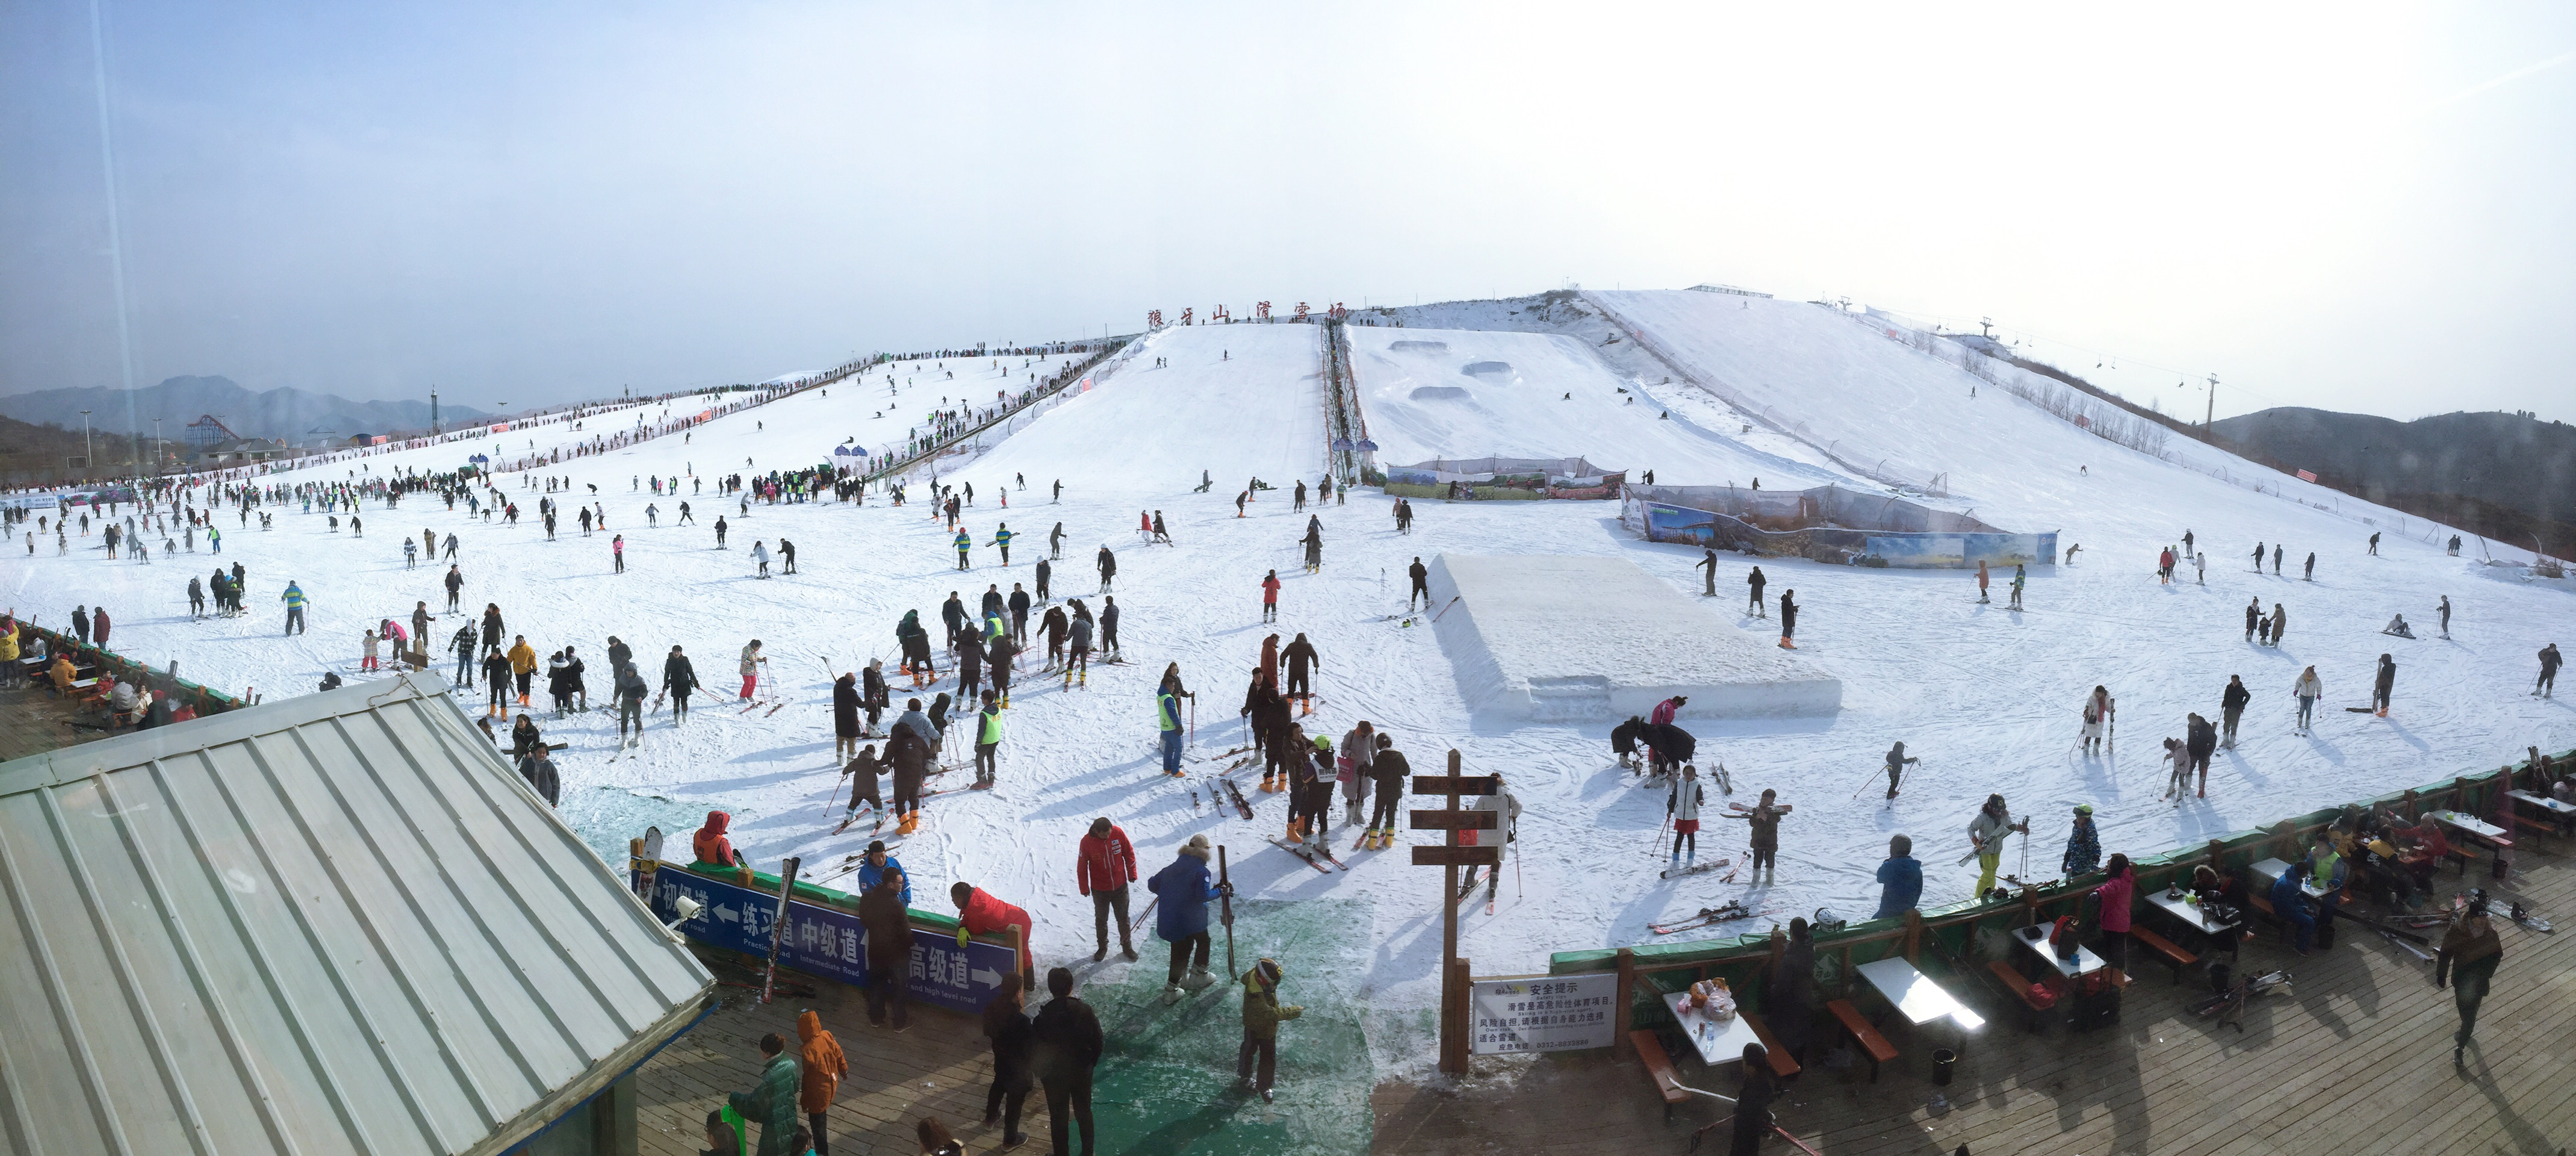 【易县景点图片】狼牙山滑雪场